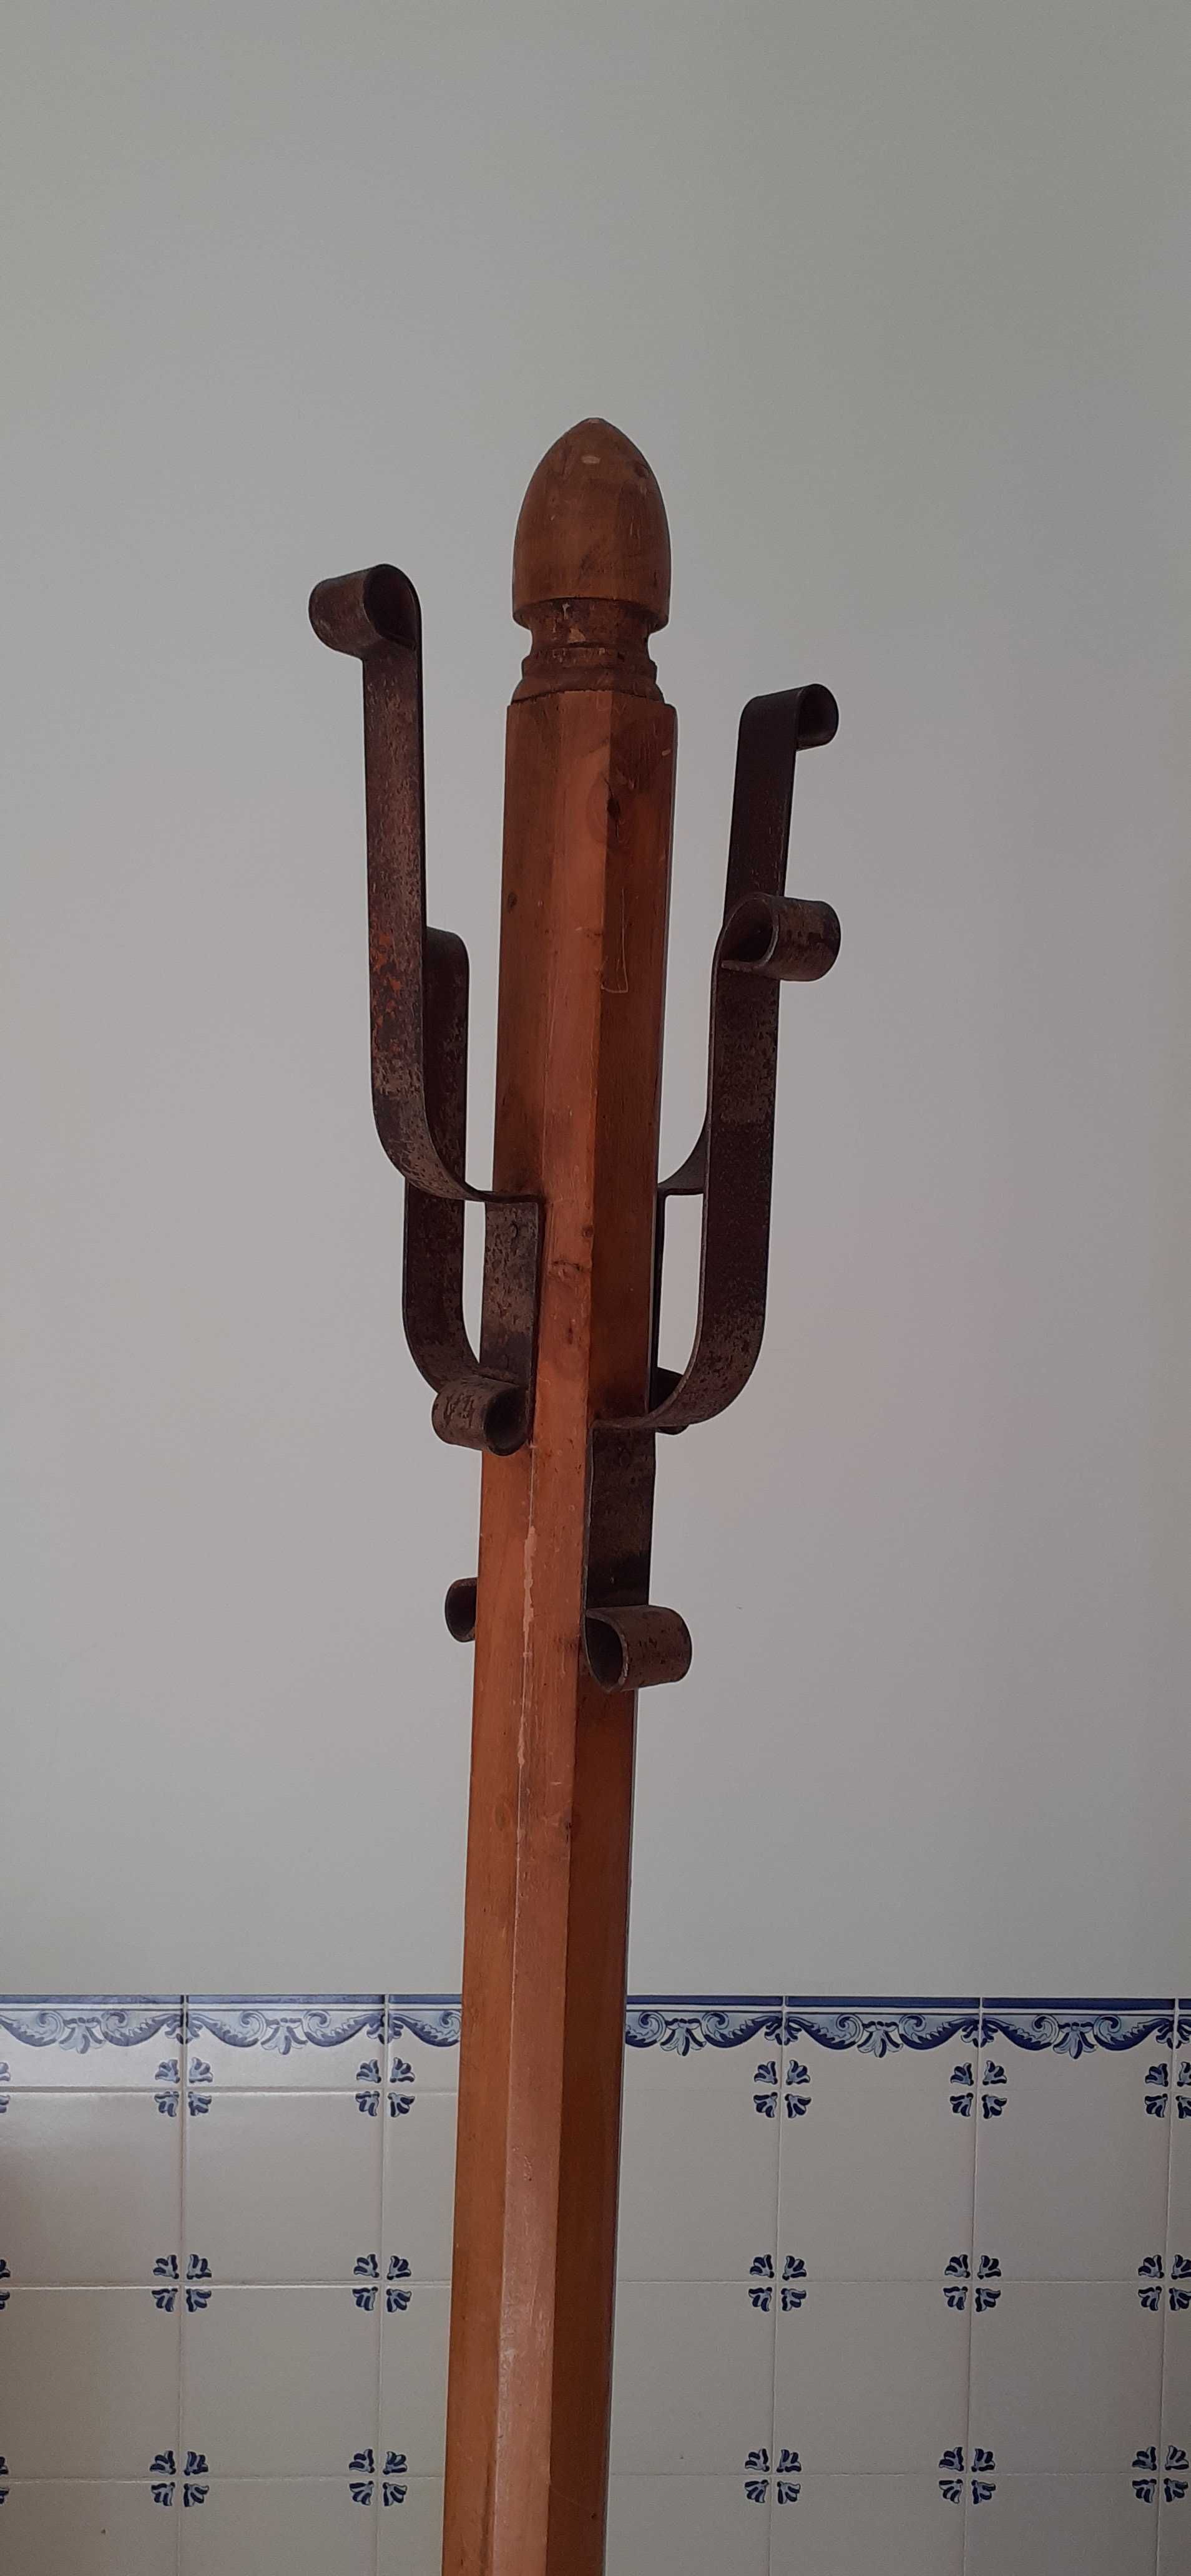 Cabide género rústico em madeira e ferro.